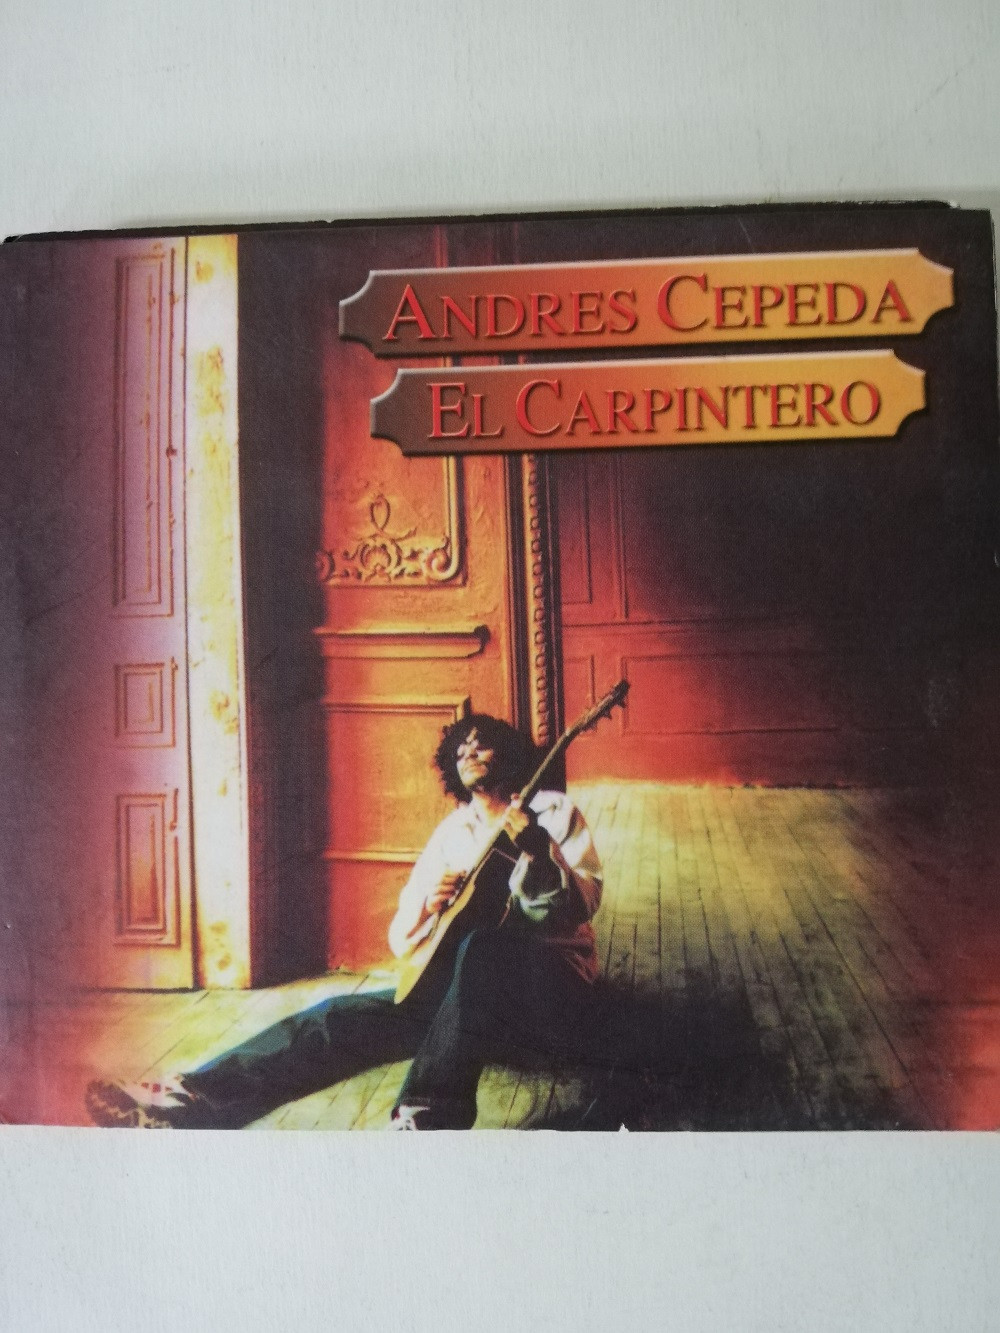 Imagen CD ANDRES CEPEDA - EL CARPINTERO 1